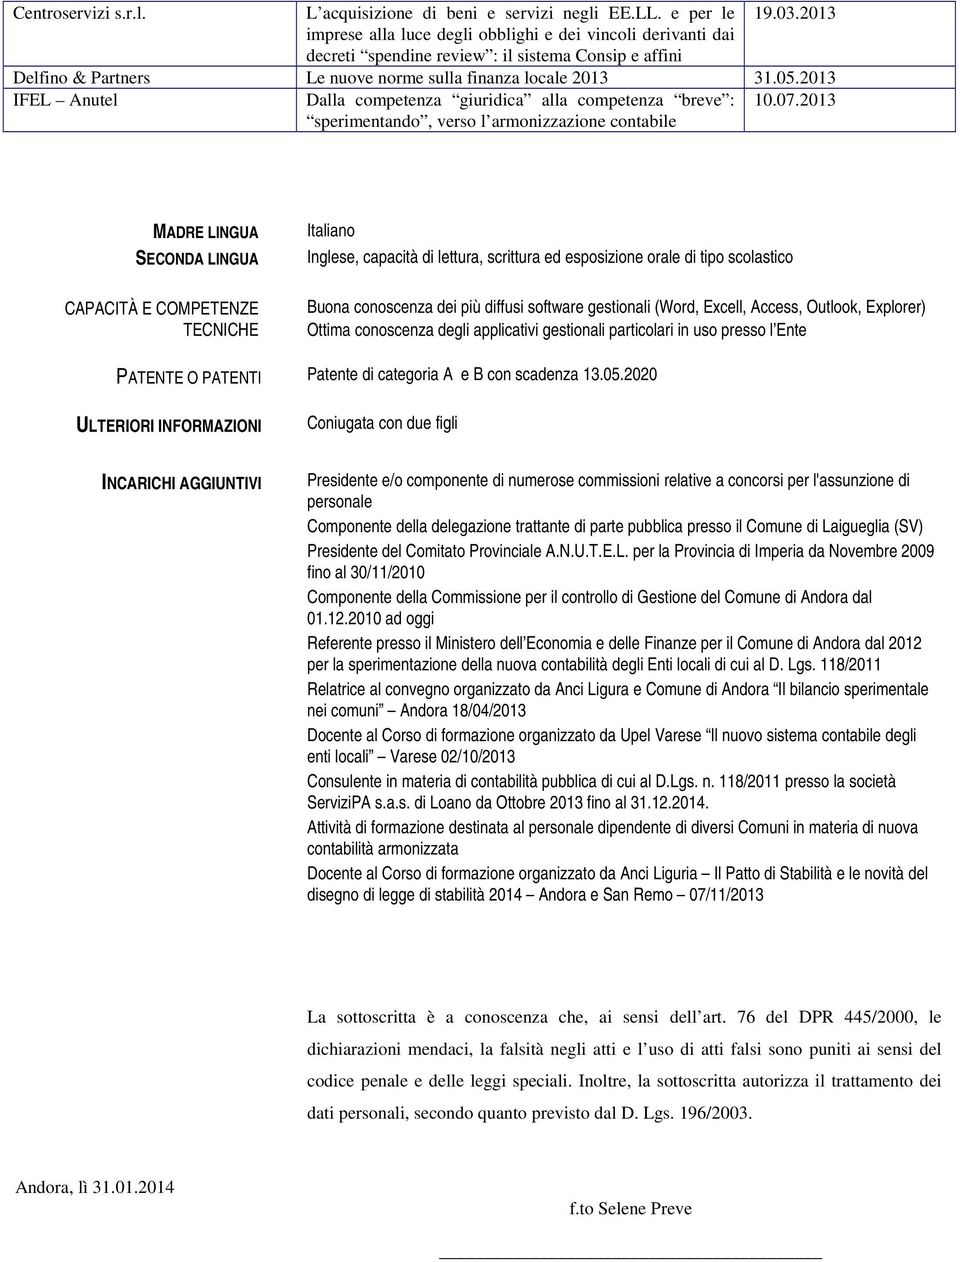 2013 IFEL Anutel Dalla competenza giuridica alla competenza breve : sperimentando, verso l armonizzazione contabile 10.07.